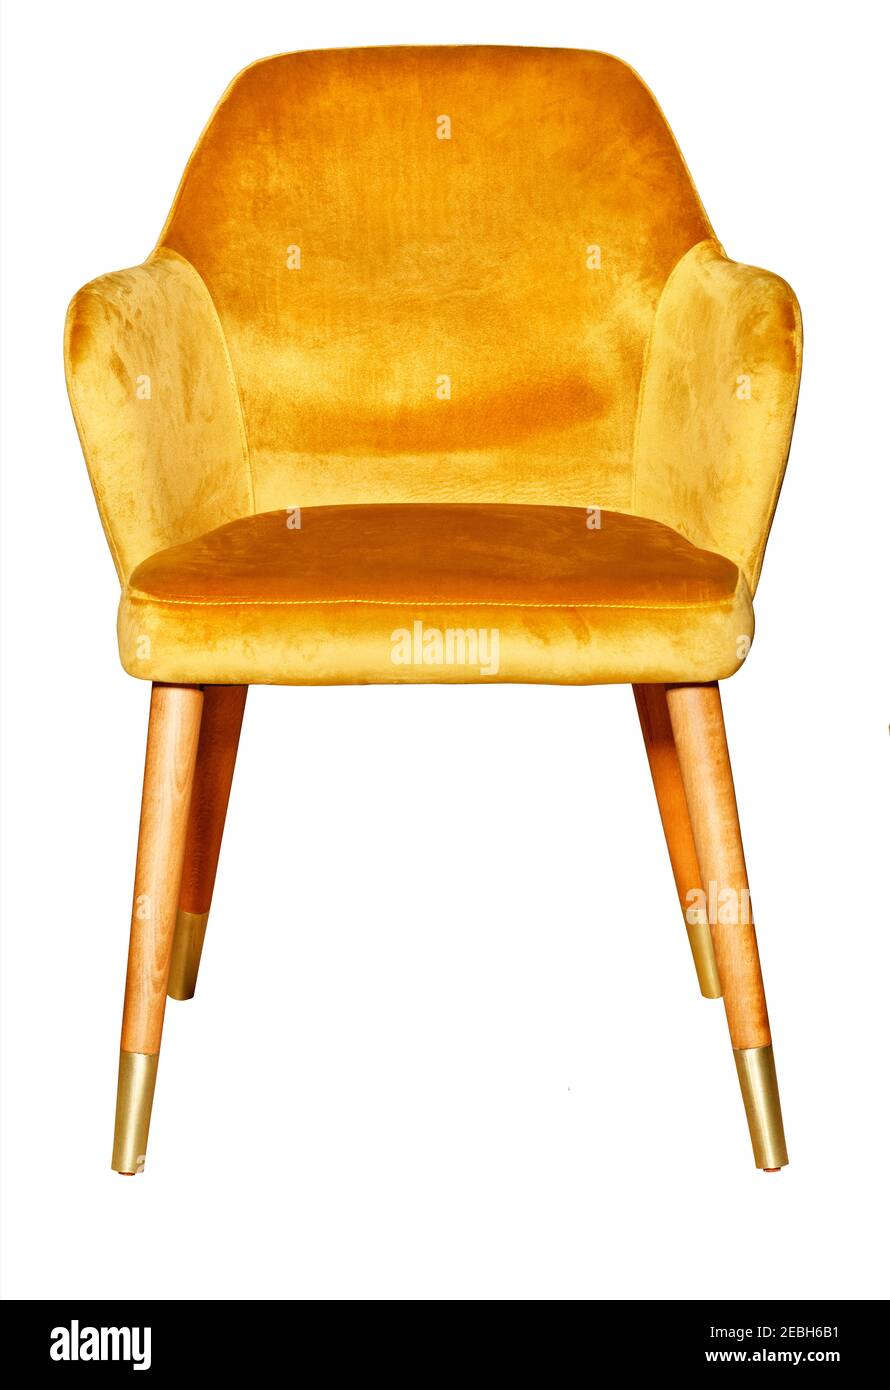 Schöner bequemer weicher Sessel mit goldenem Veloursbezug, Holzbeinen und vergoldeten Spitzen, isoliert auf weißem Hintergrund. Stockfoto